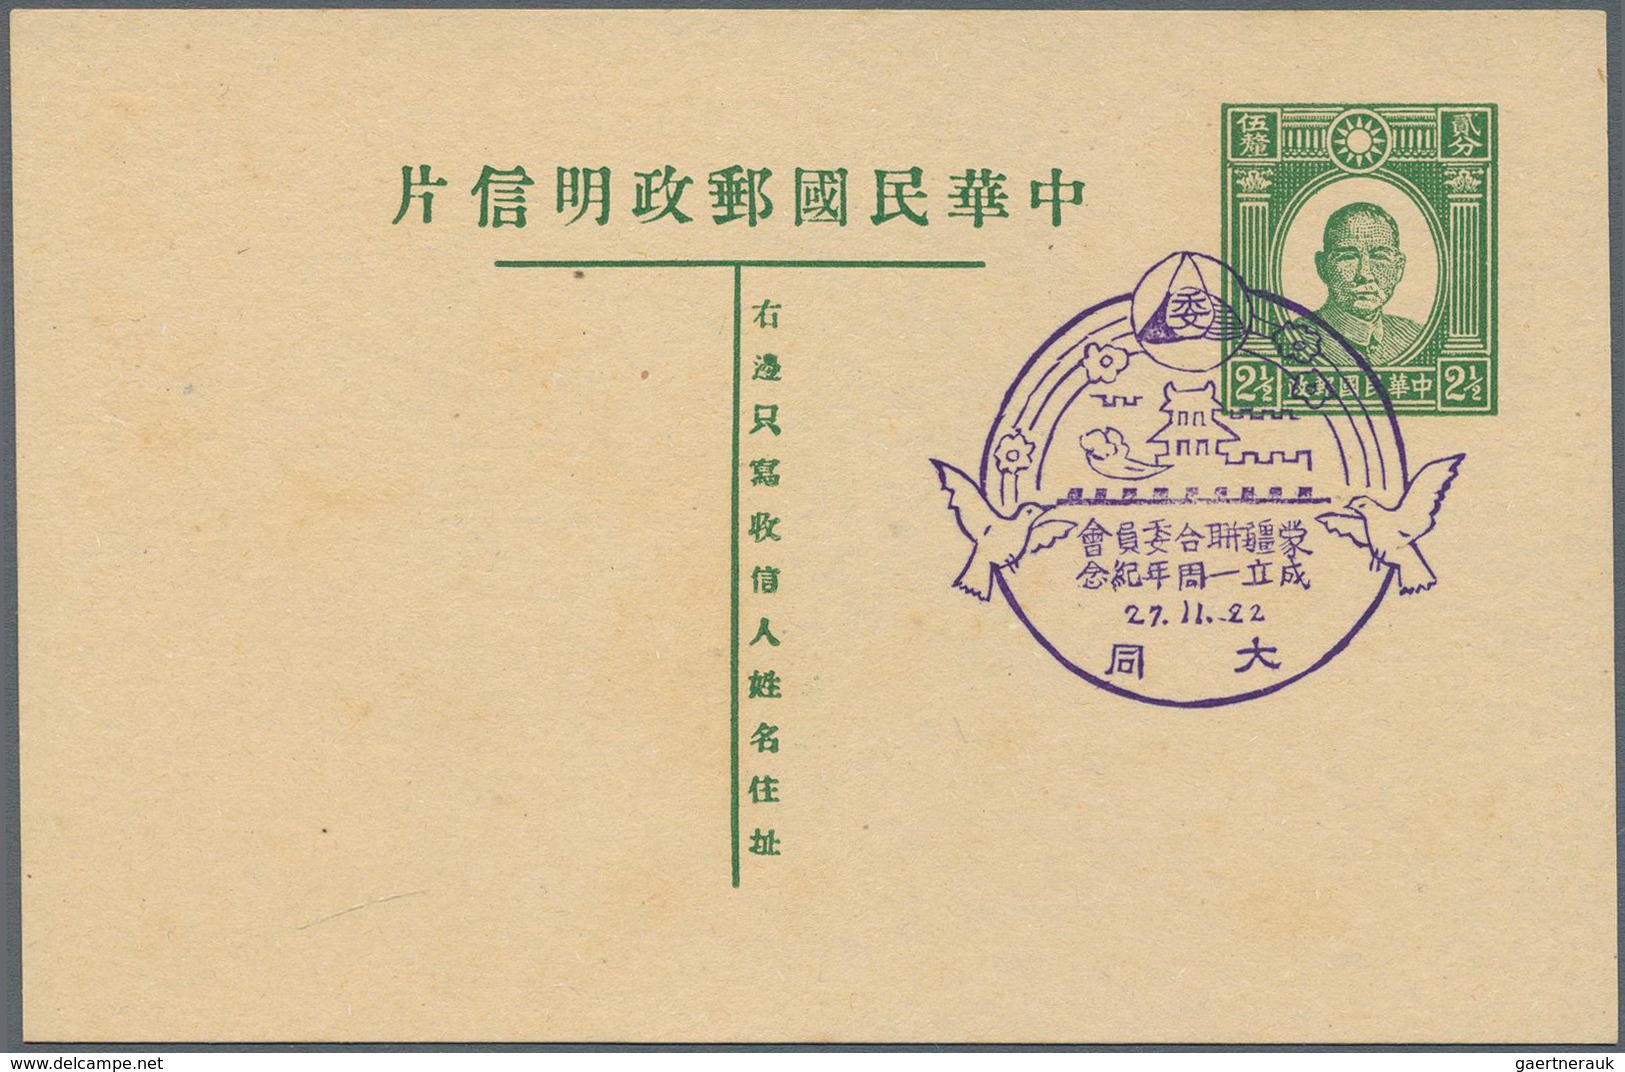 22930 Japanische Besetzung  WK II - China / Mengkiang - Inner Mongolia: 1939/44 (ca.), cto stationery card